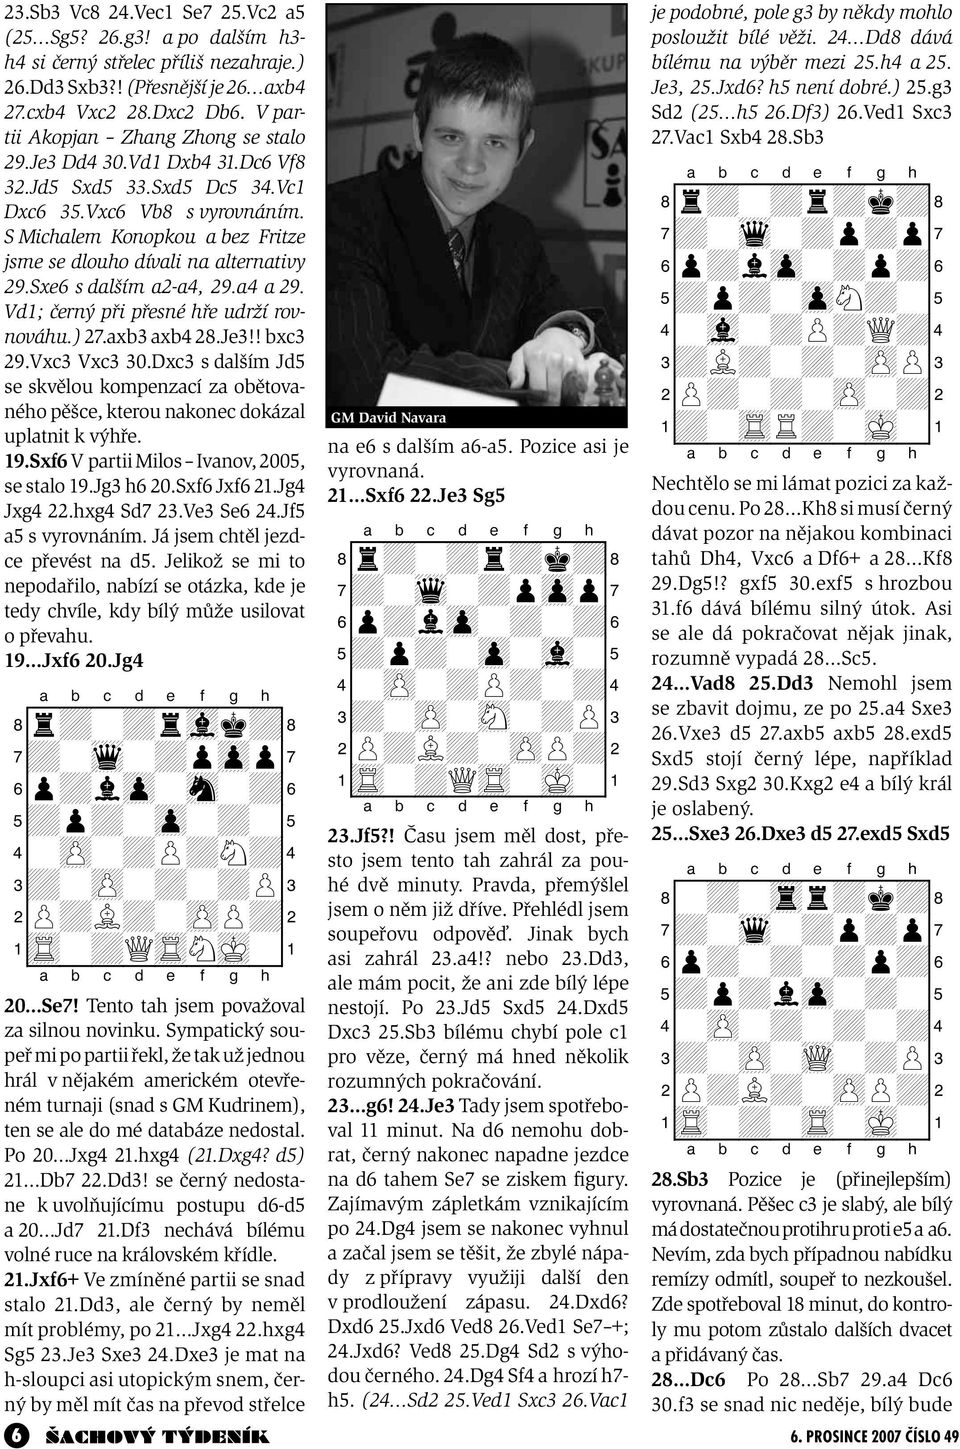 S Michalem Konopkou a bez Fritze jsme se dlouho dívali na alternativy 29.Sxe6 s dalším a2-a4, 29.a4 a 29. Vd1; černý při přesné hře udrží rovnováhu.) 27.axb3 axb4 28.Je3!! bxc3 29.Vxc3 Vxc3 30.